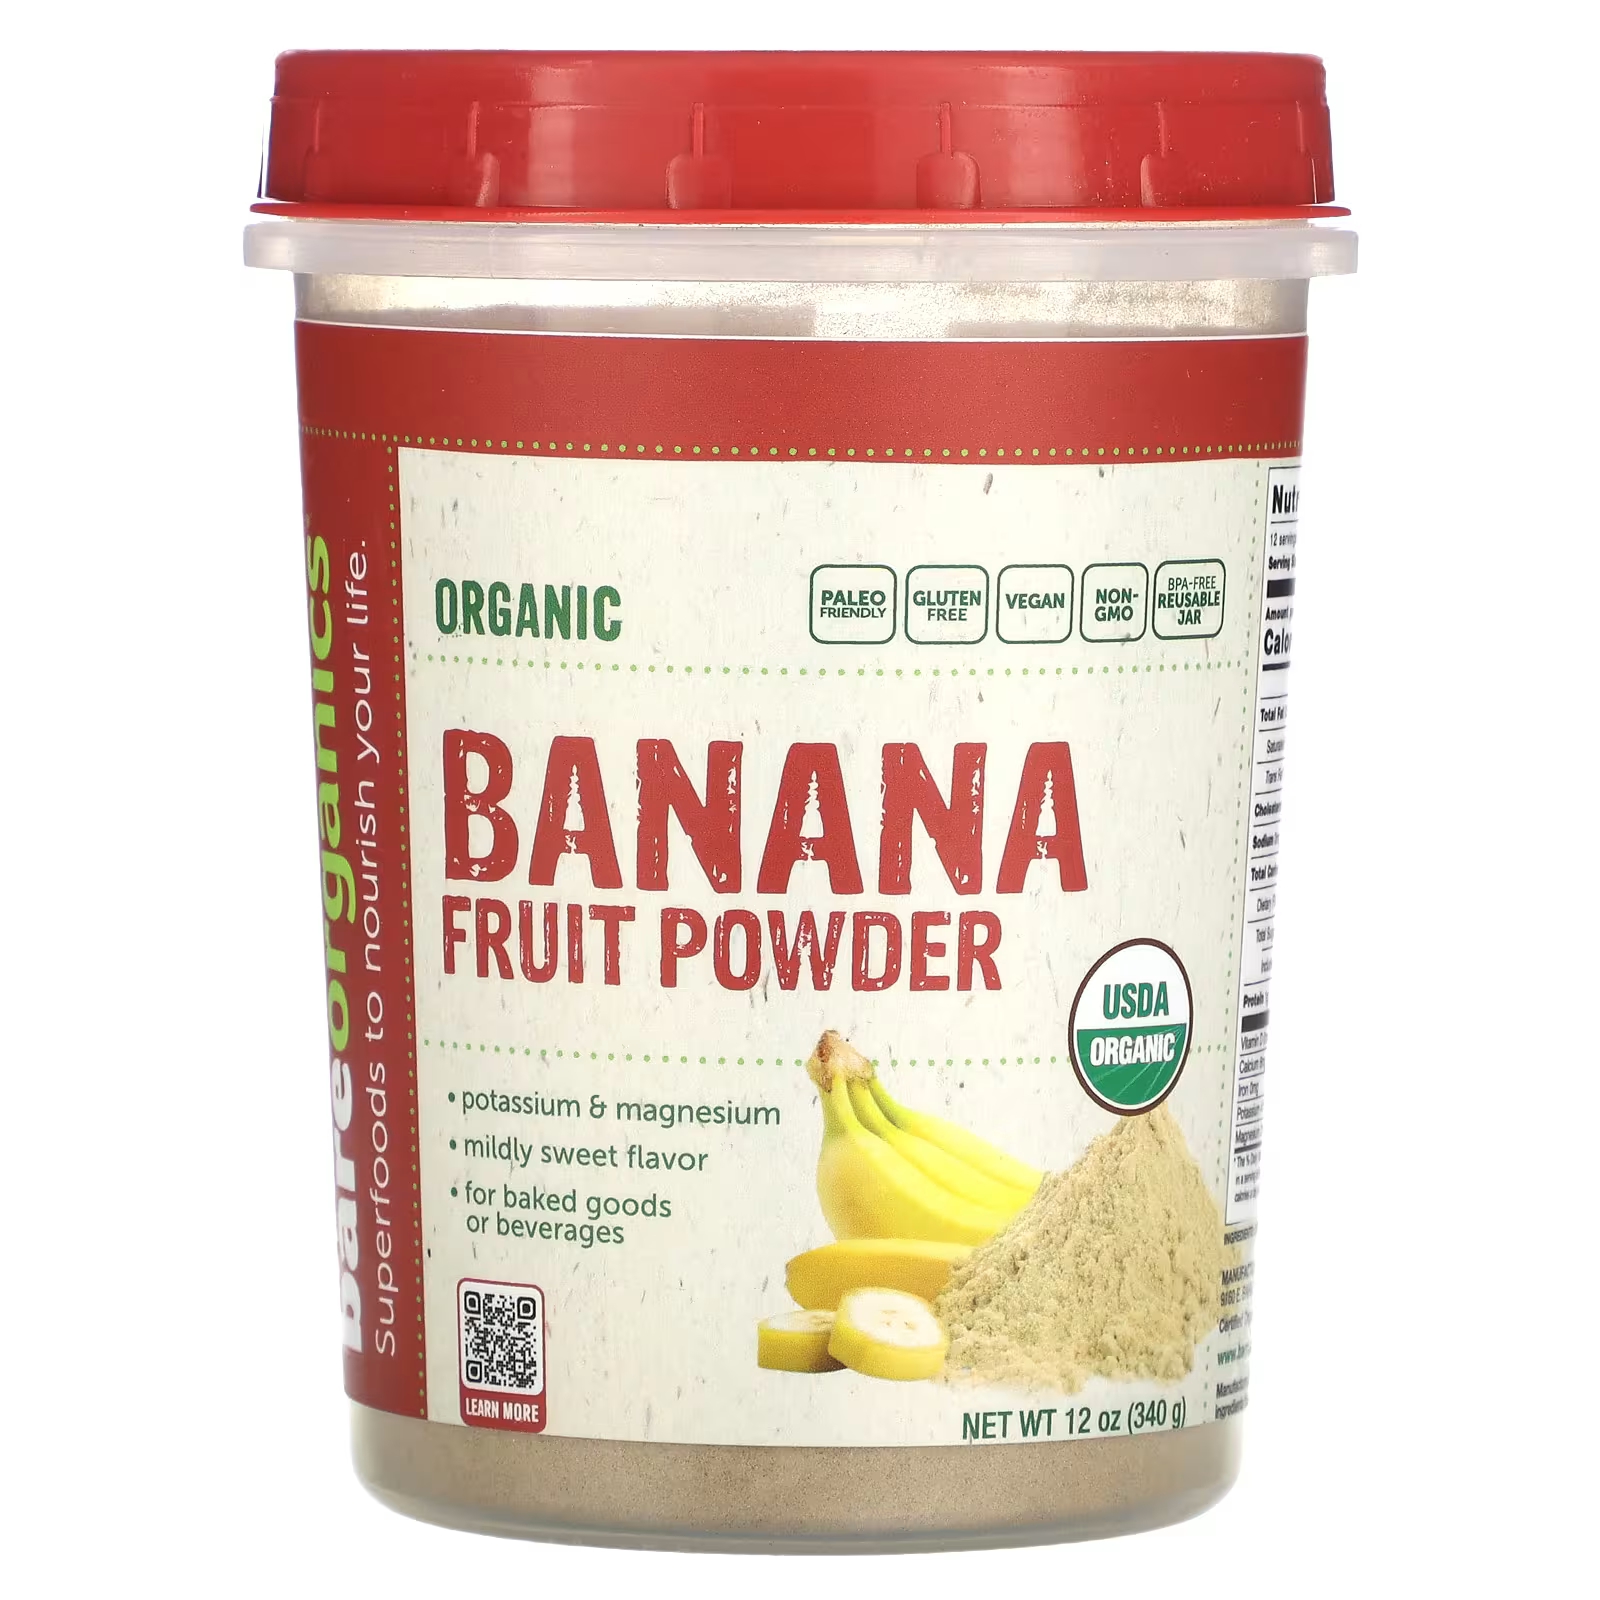 Порошок органический BareOrganics бананово-фруктовый, 340 г порошок семян расторопши bareorganics сырой органический 227 г